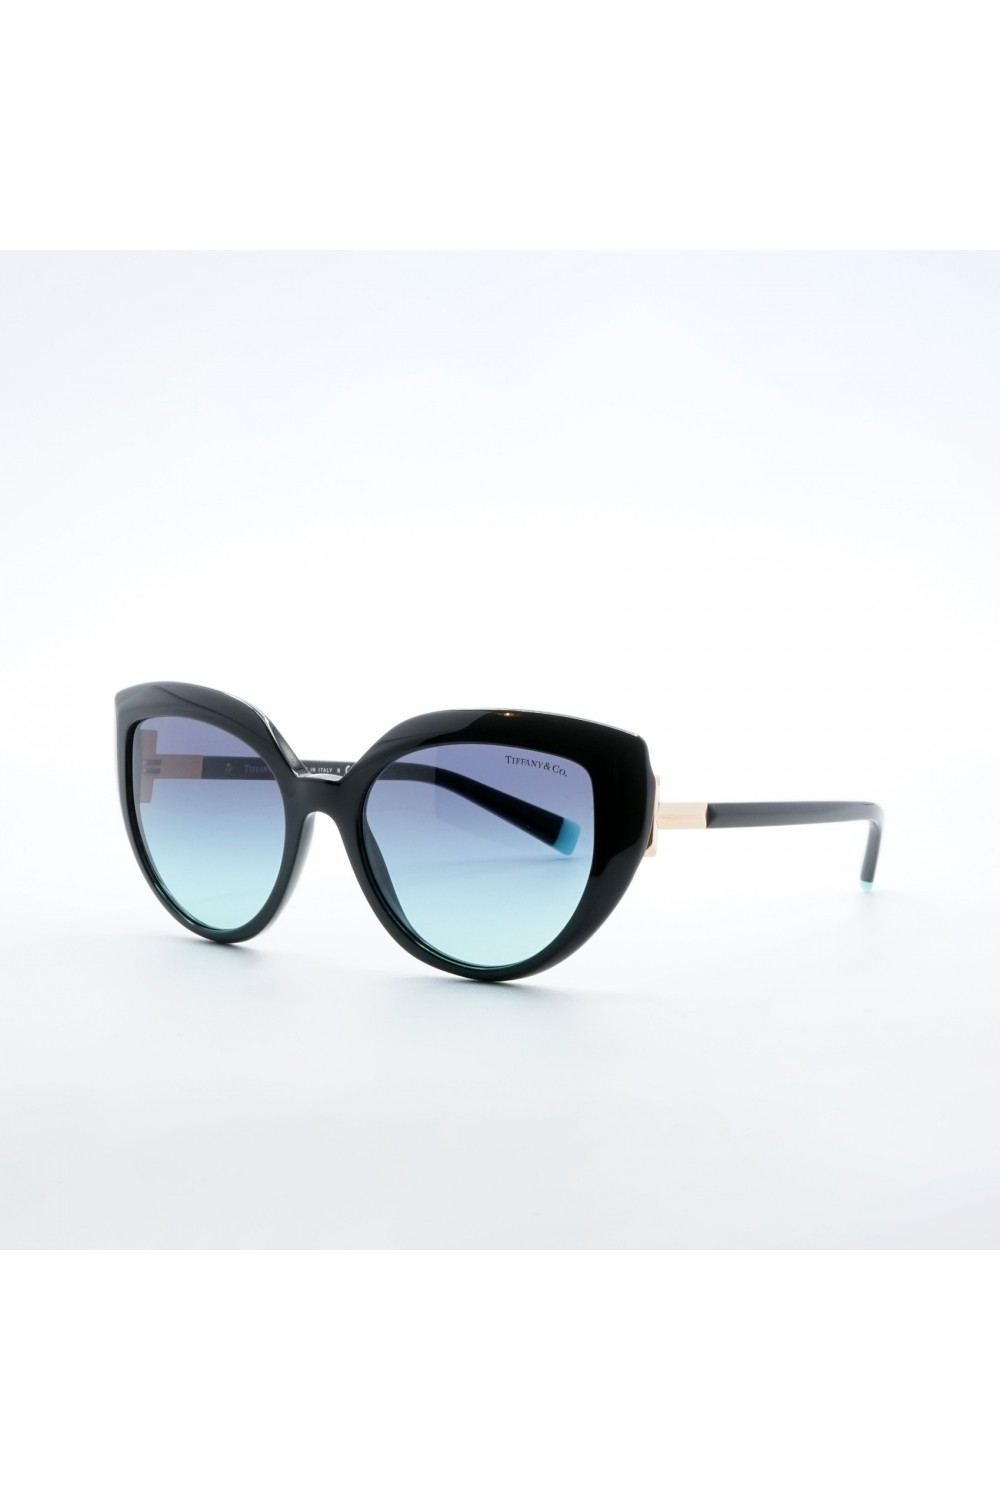 Tiffany & Co. - Occhiali da sole in celluloide cat eye per donna nero - TF4170